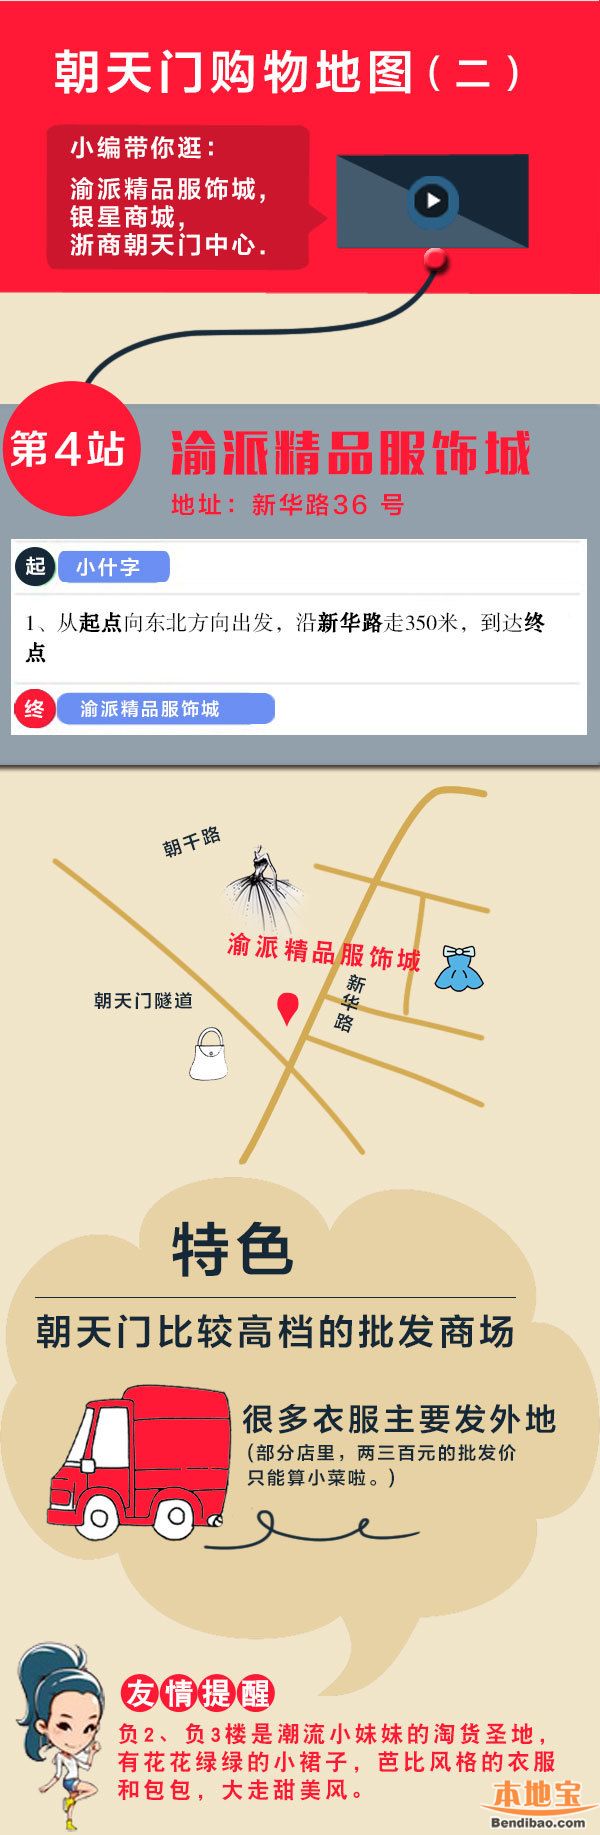 重庆市内十大必去旅游景点游玩攻略